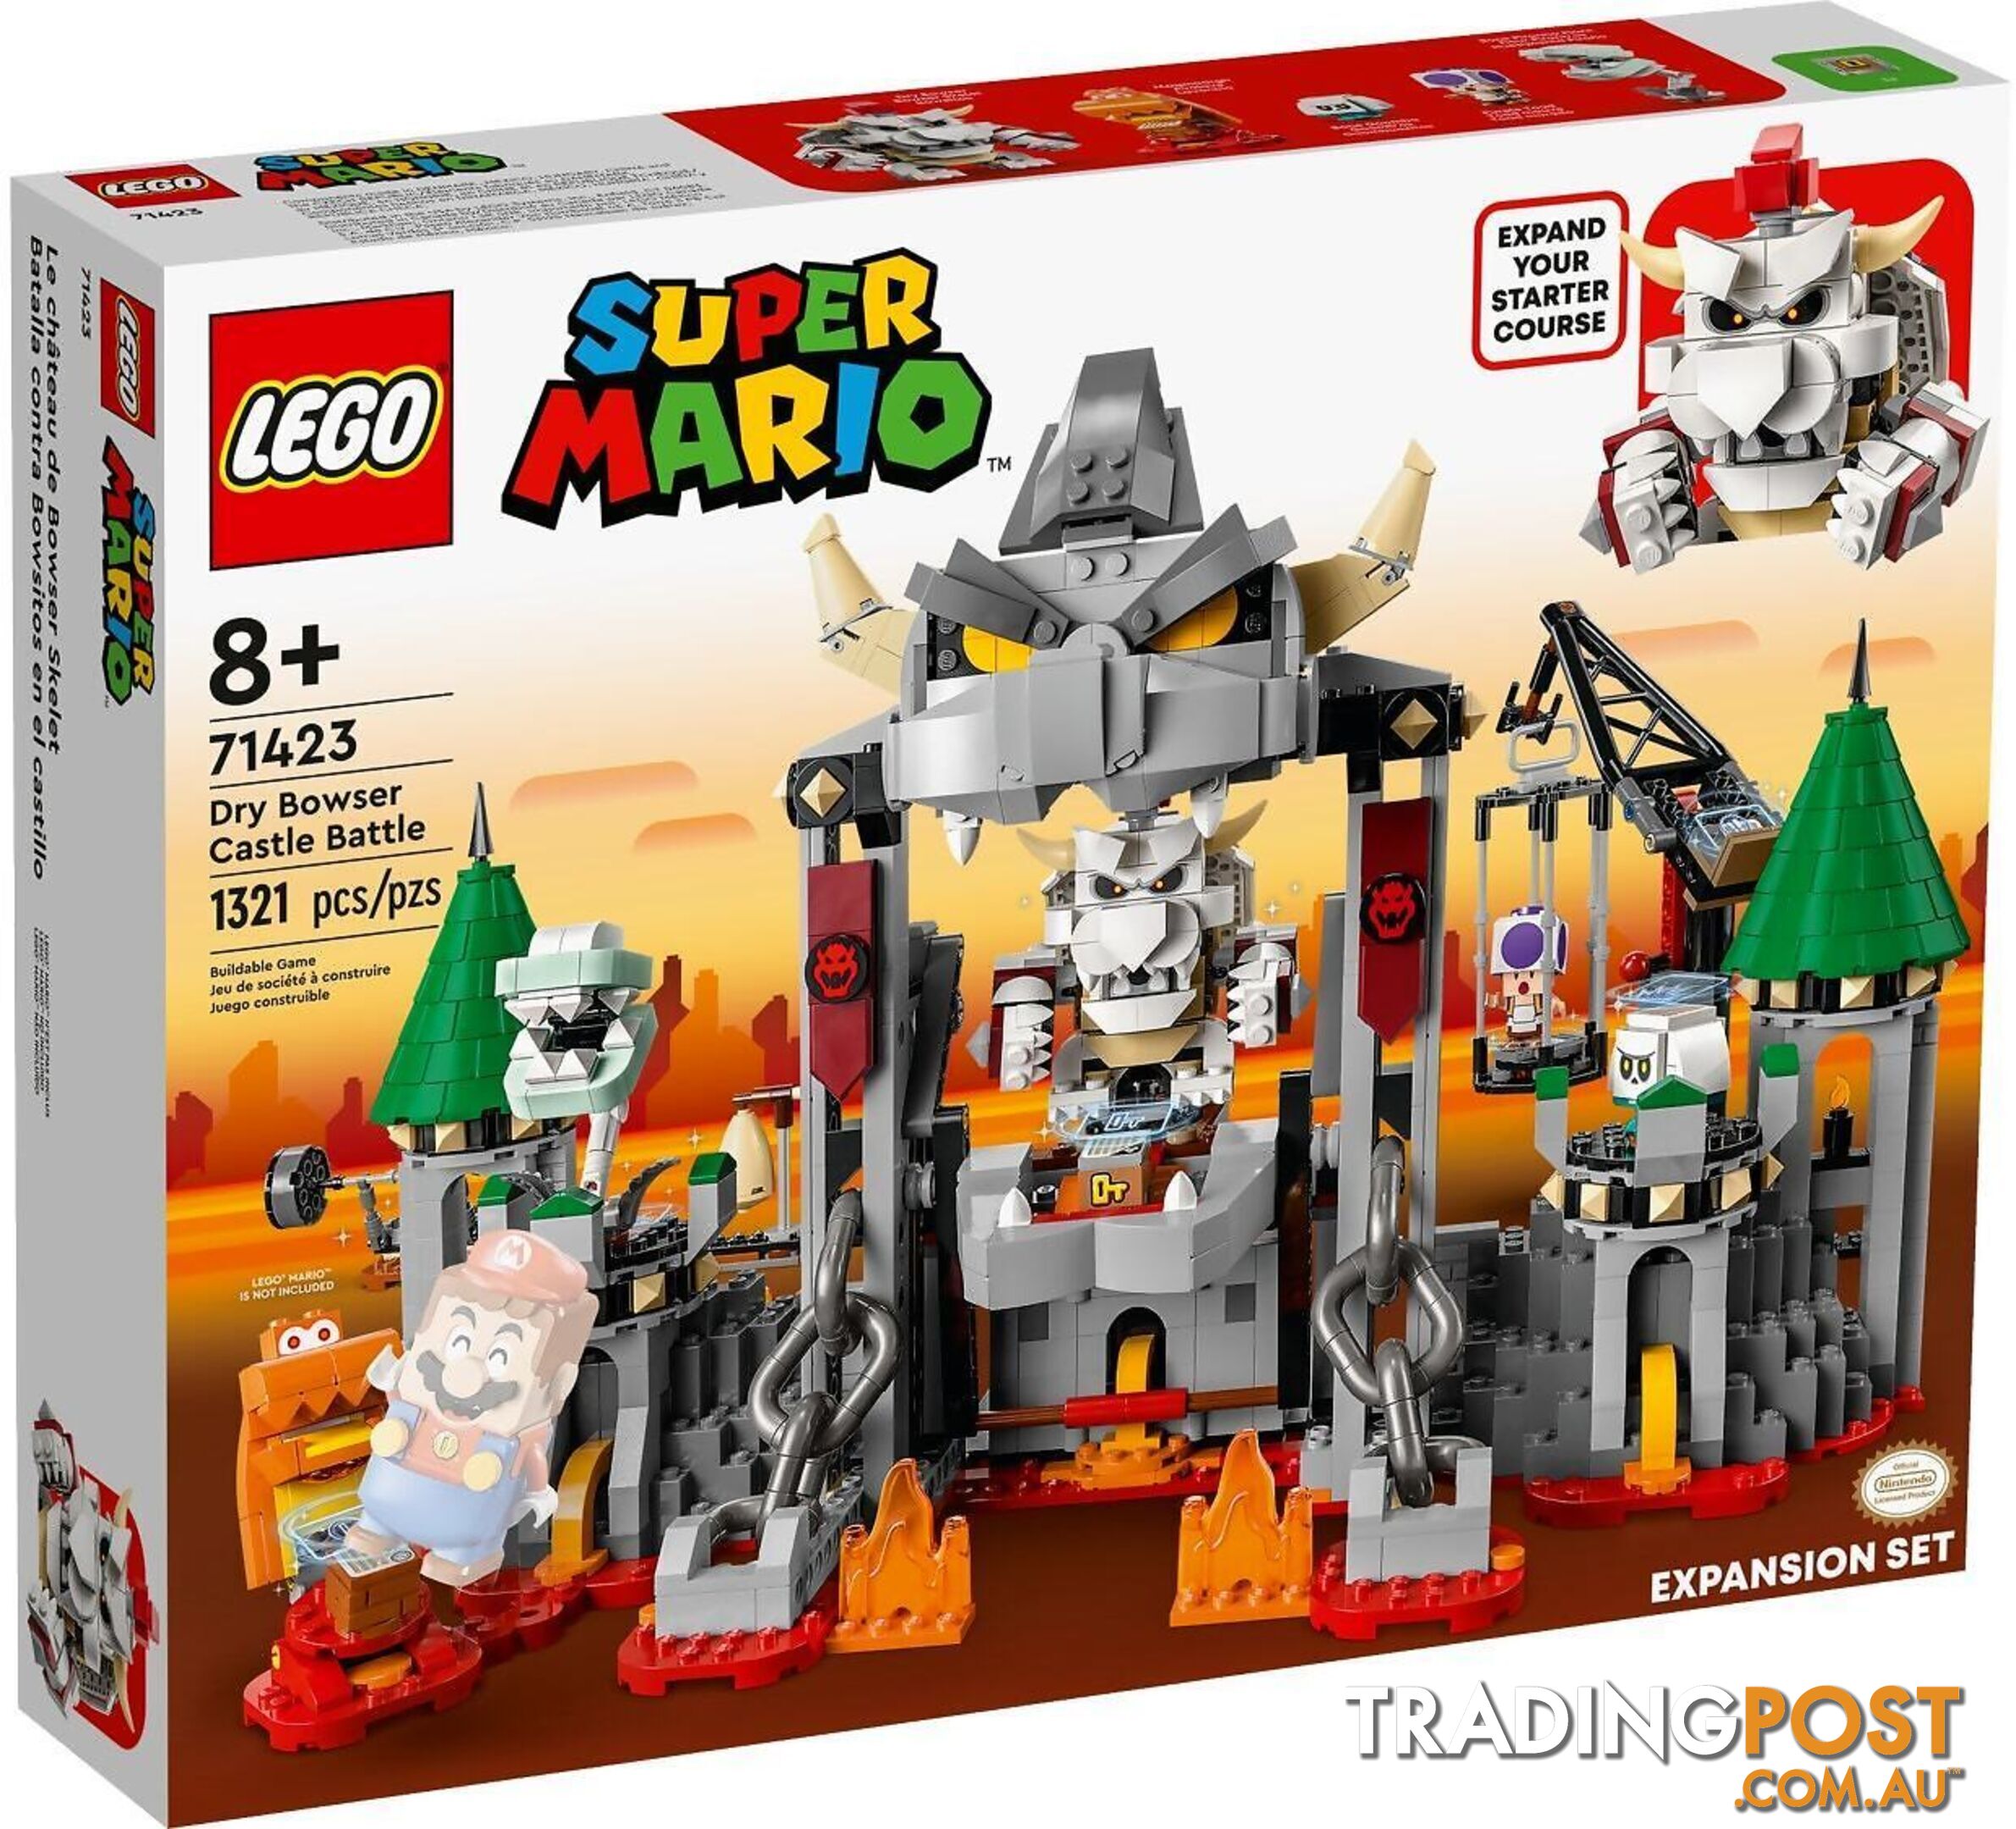 LEGO 71423 Dry Bowser Castle Battle Expansion Set - Super Mario - 5702017415758